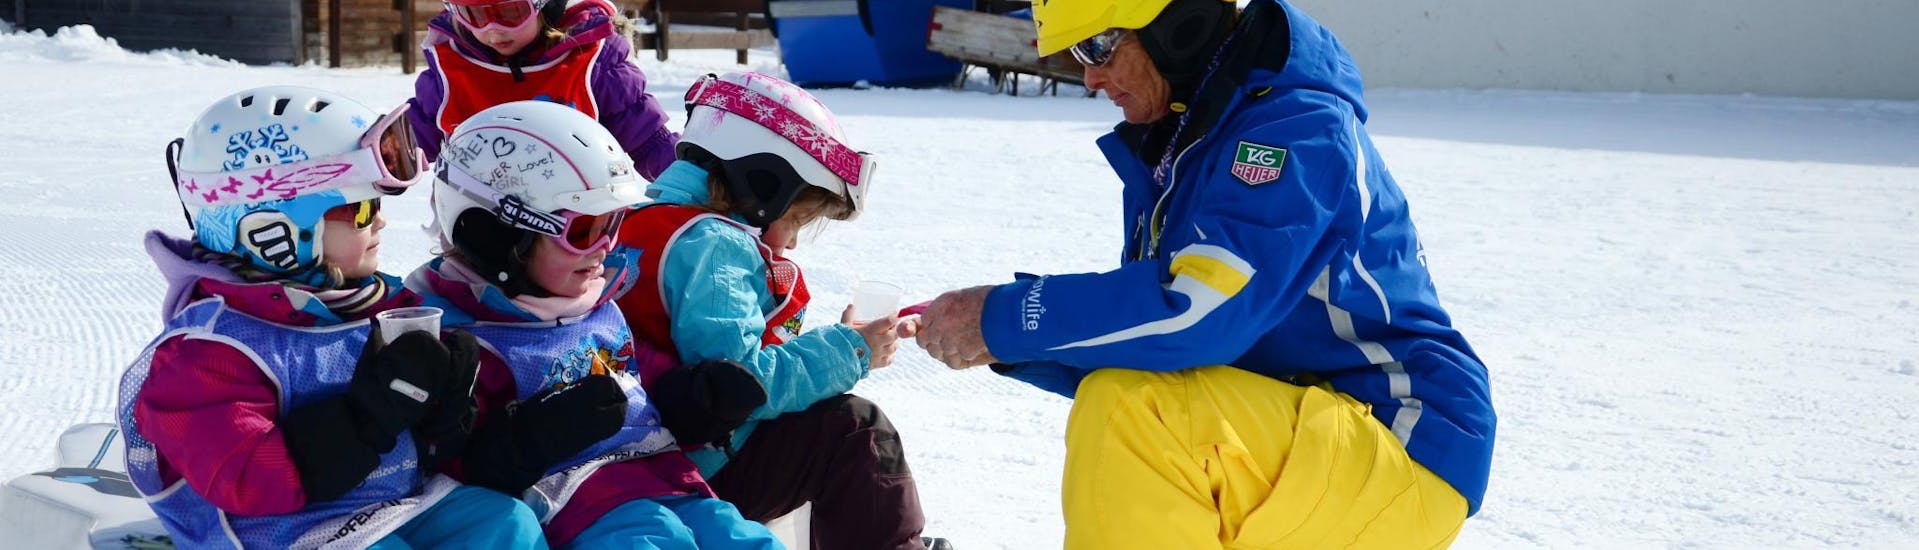 Clases de esquí para niños "Bolgen" (4-7 años) para debutantes.